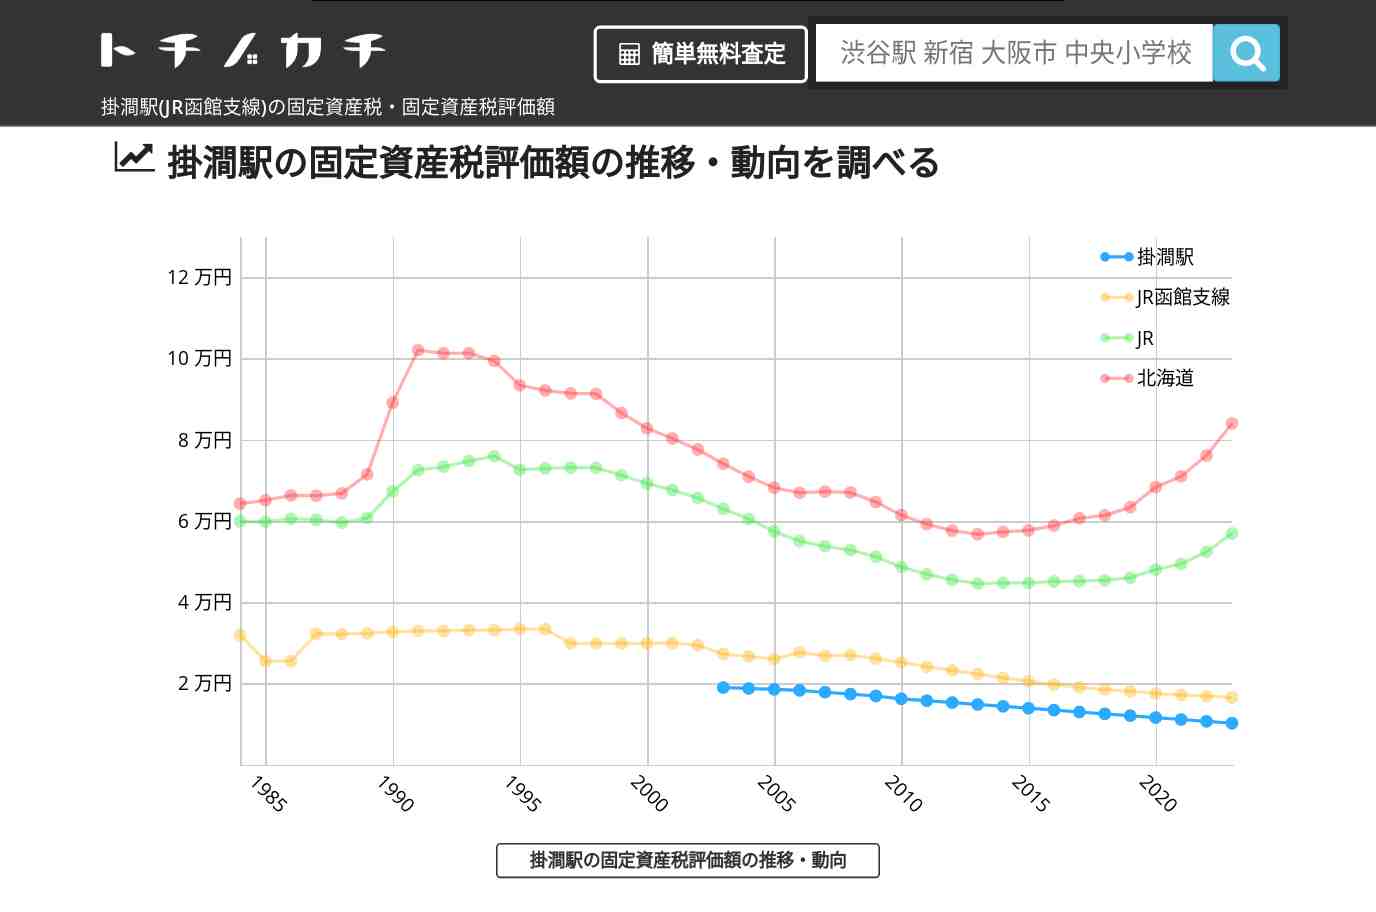 掛澗駅(JR函館支線)の固定資産税・固定資産税評価額 | トチノカチ